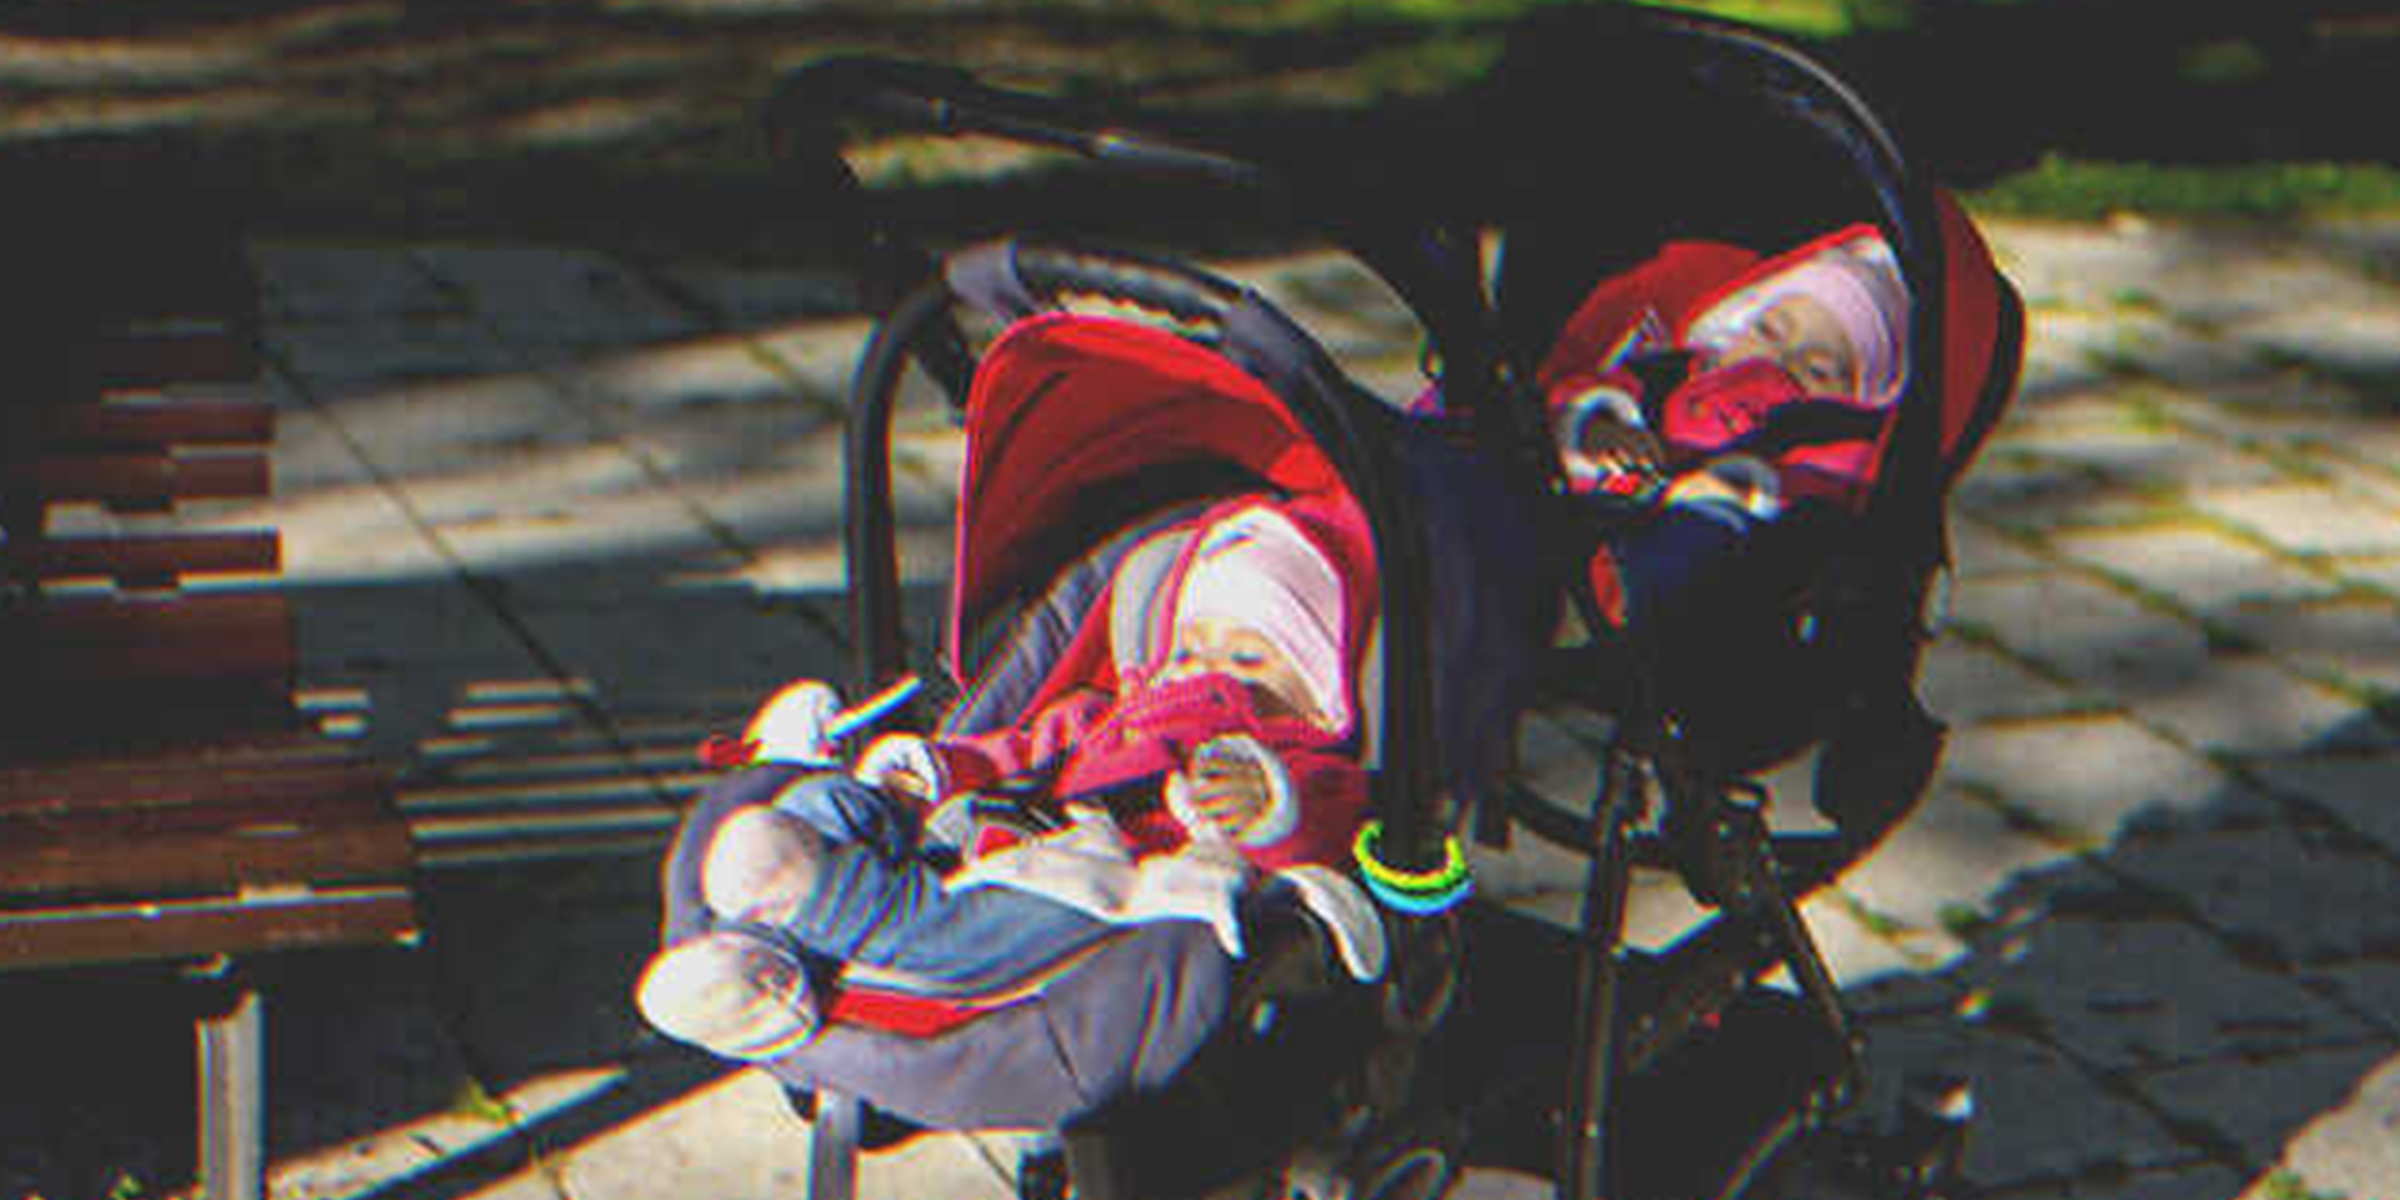 Twins in stroller | Source: Shutterstock